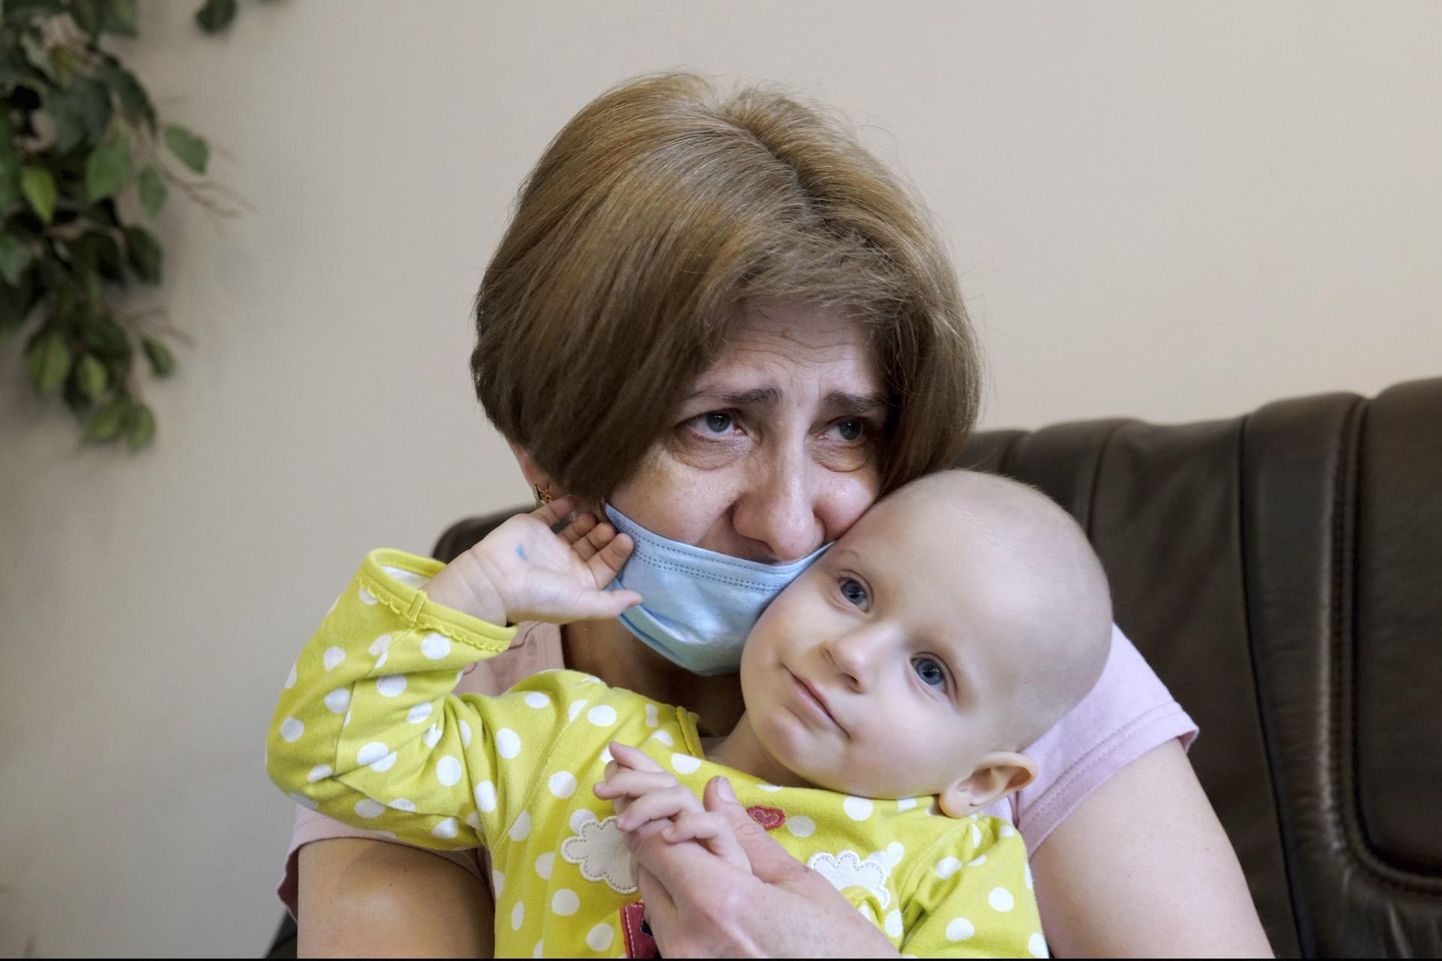 Kaheaastane Jeva Vakulenko põeb leukeemiat ja on üks 500-st vähidiagnoosiga ukraina lapsest, kes on evakueeritud Poola haiglasse. Fotol on ta vanaema süles.